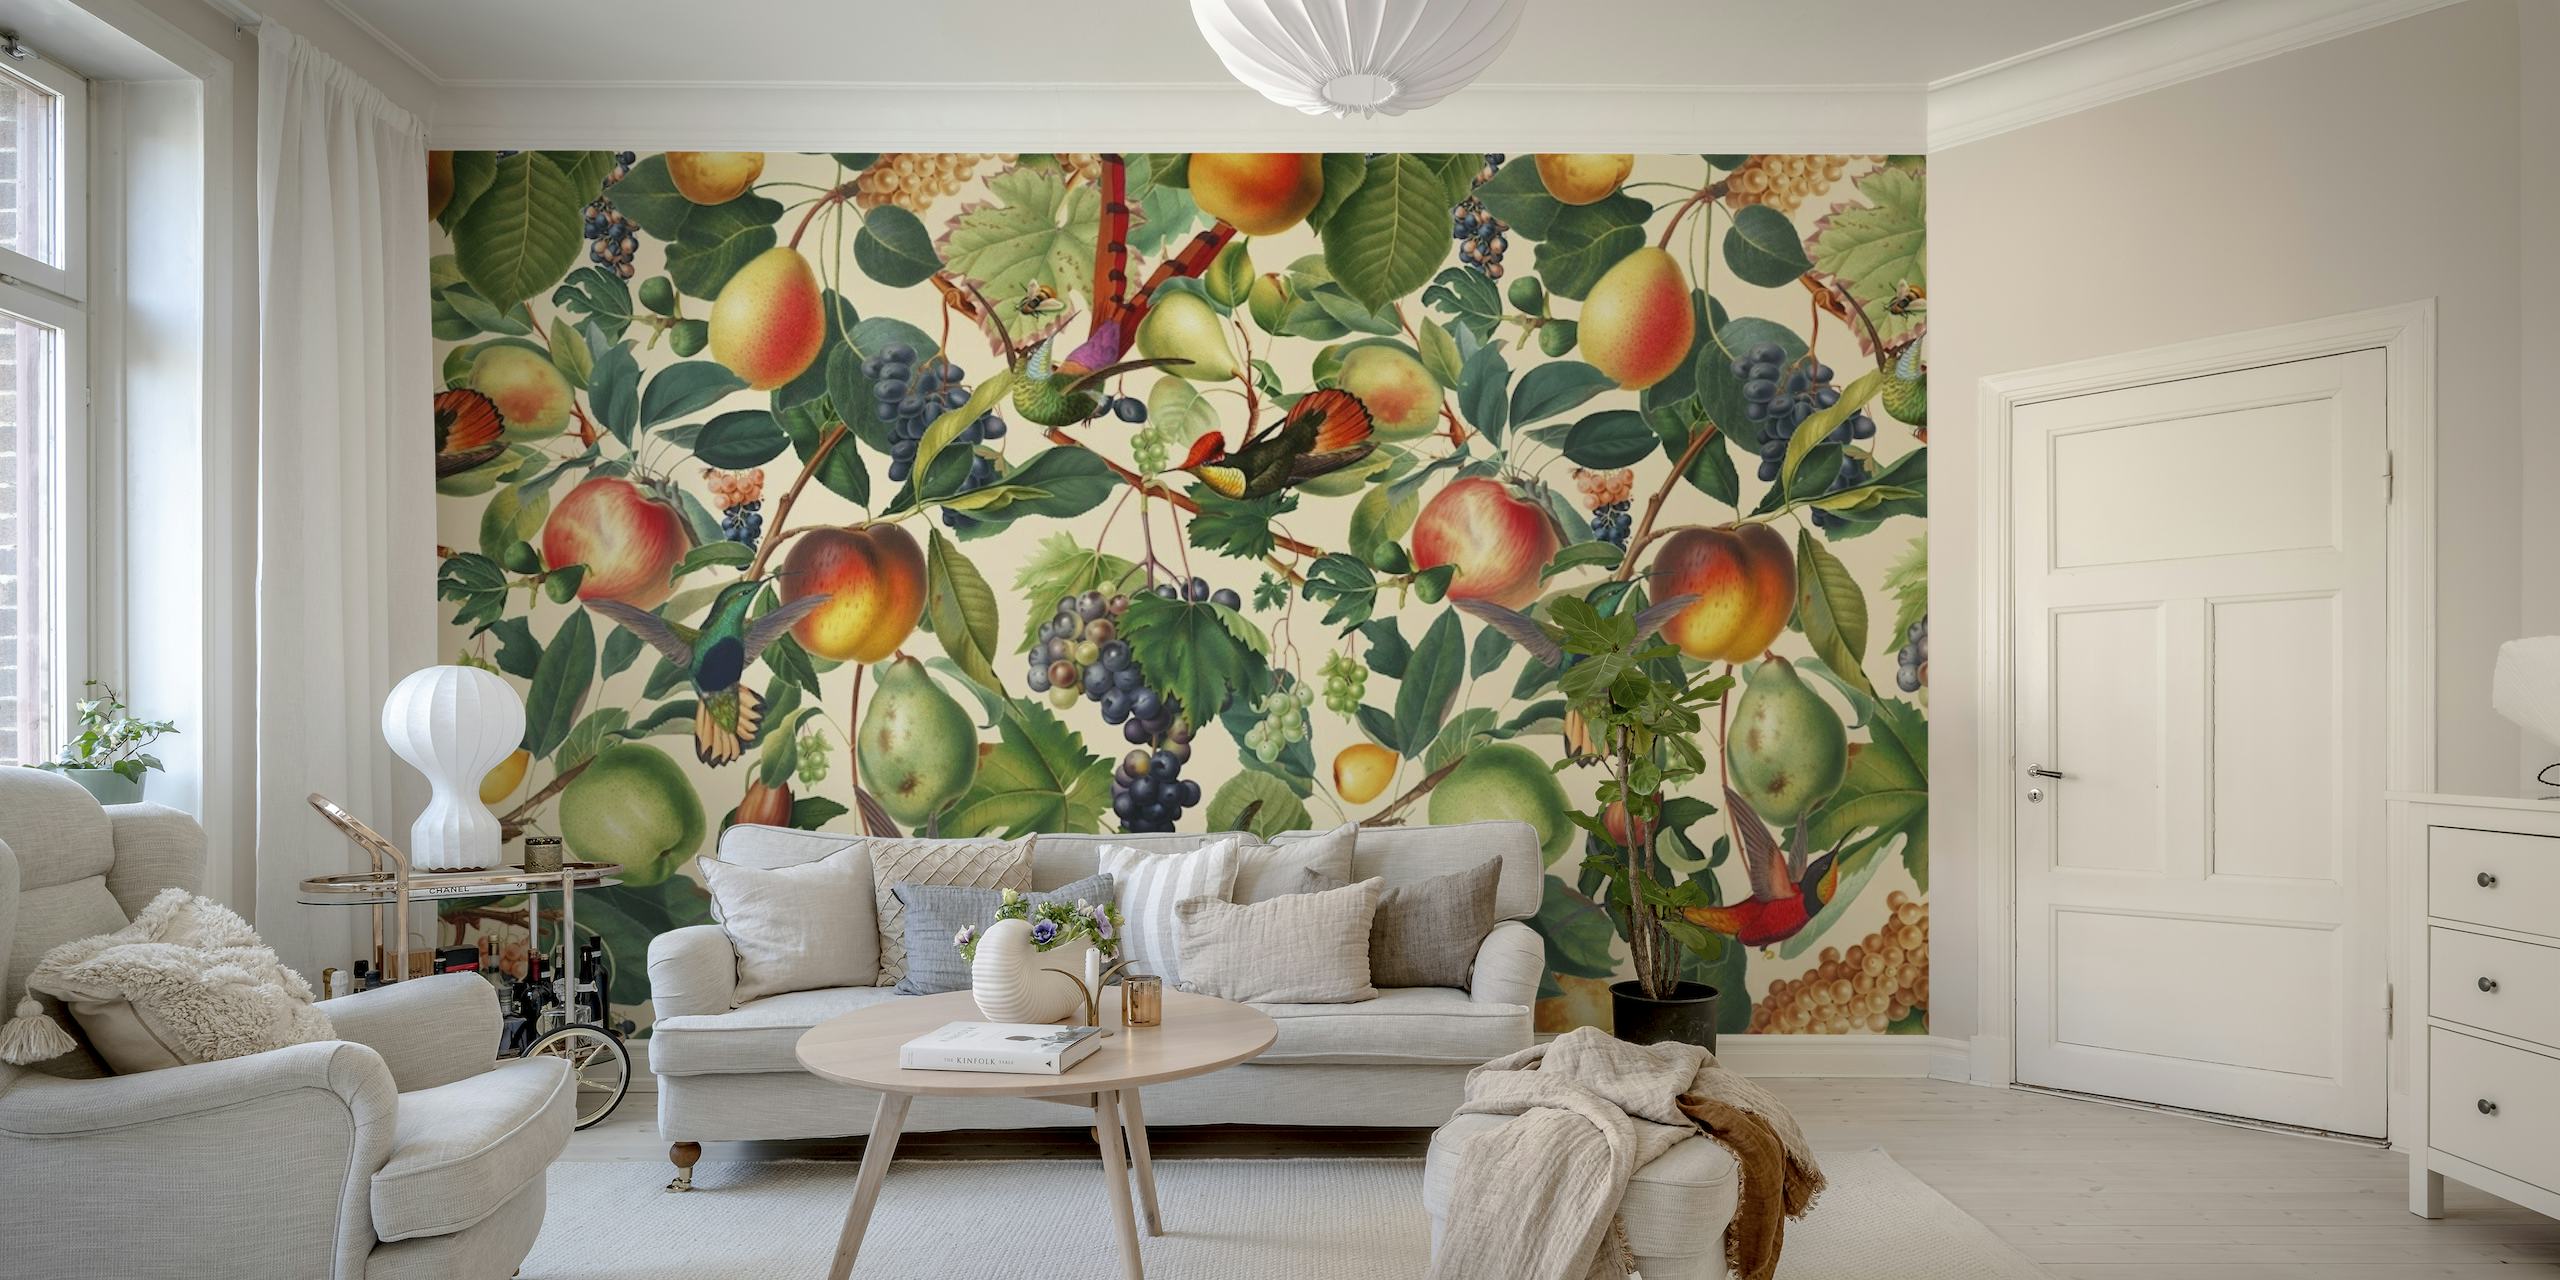 Mural de parede com tema de verão com uma variedade de frutas como pêssegos e uvas em meio a um padrão de folhas verdes